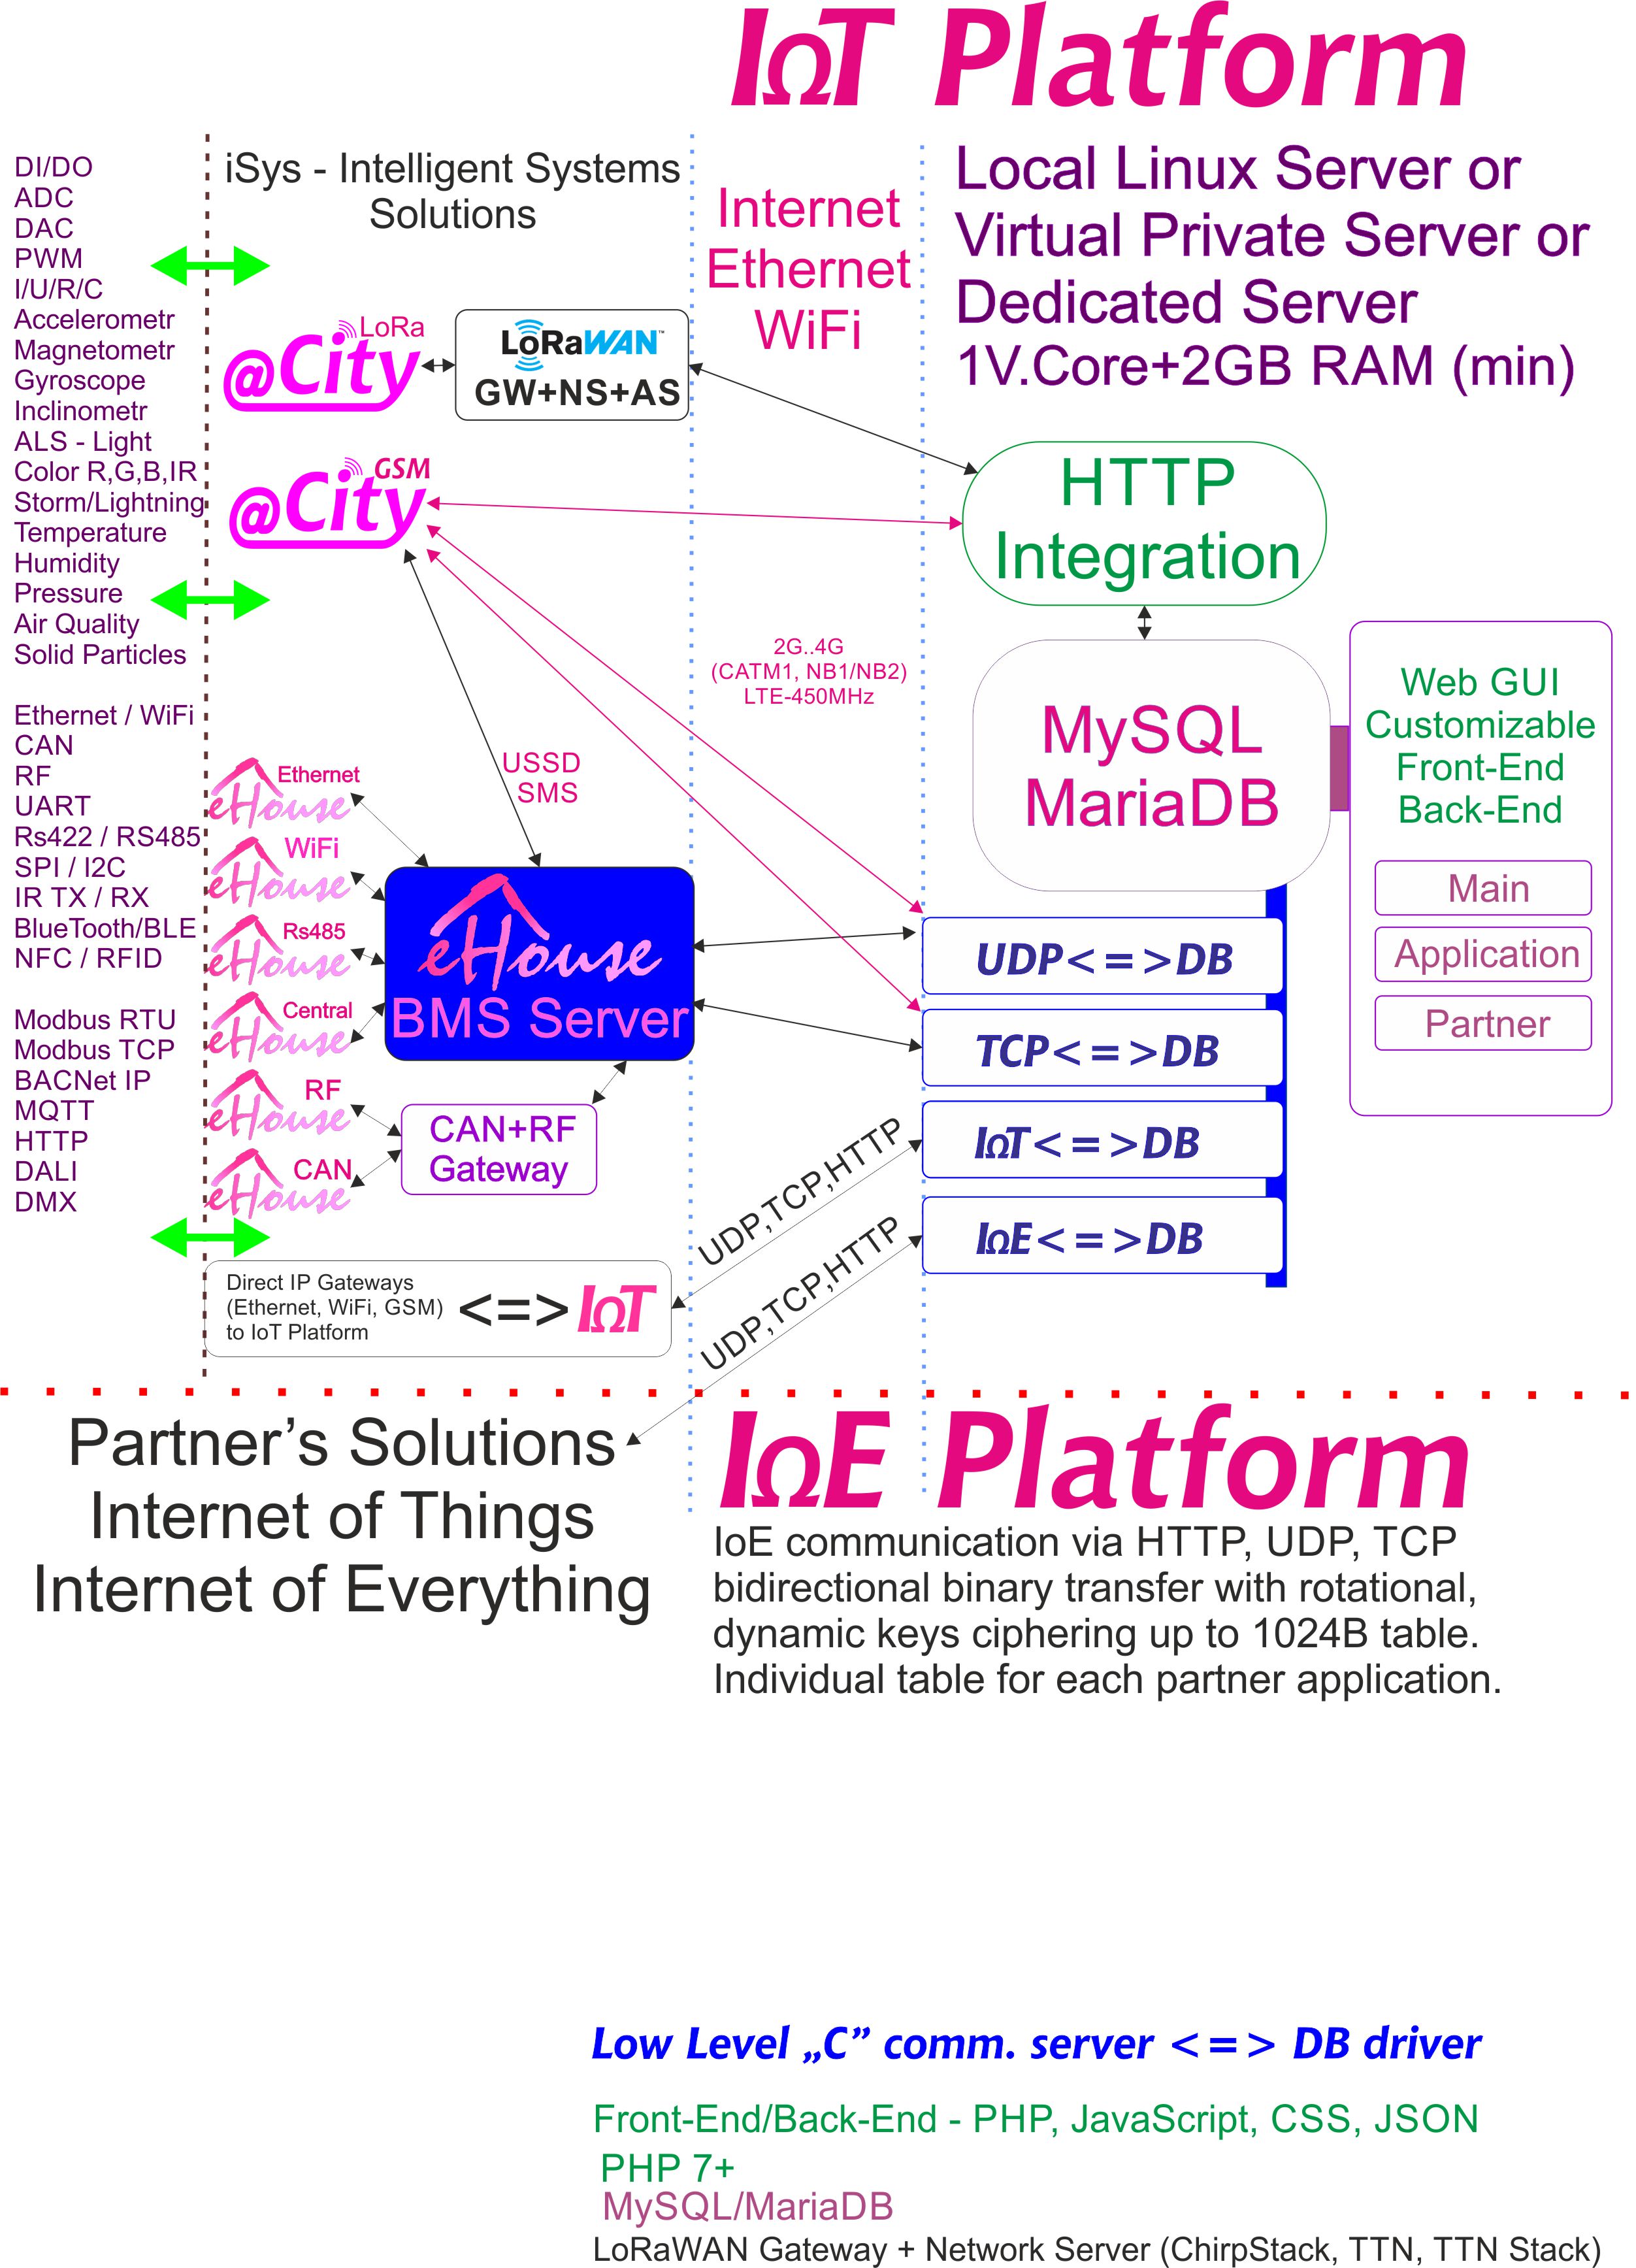 IoE, piattaforma IoT dedicata per ogni partner con cifratura individuale